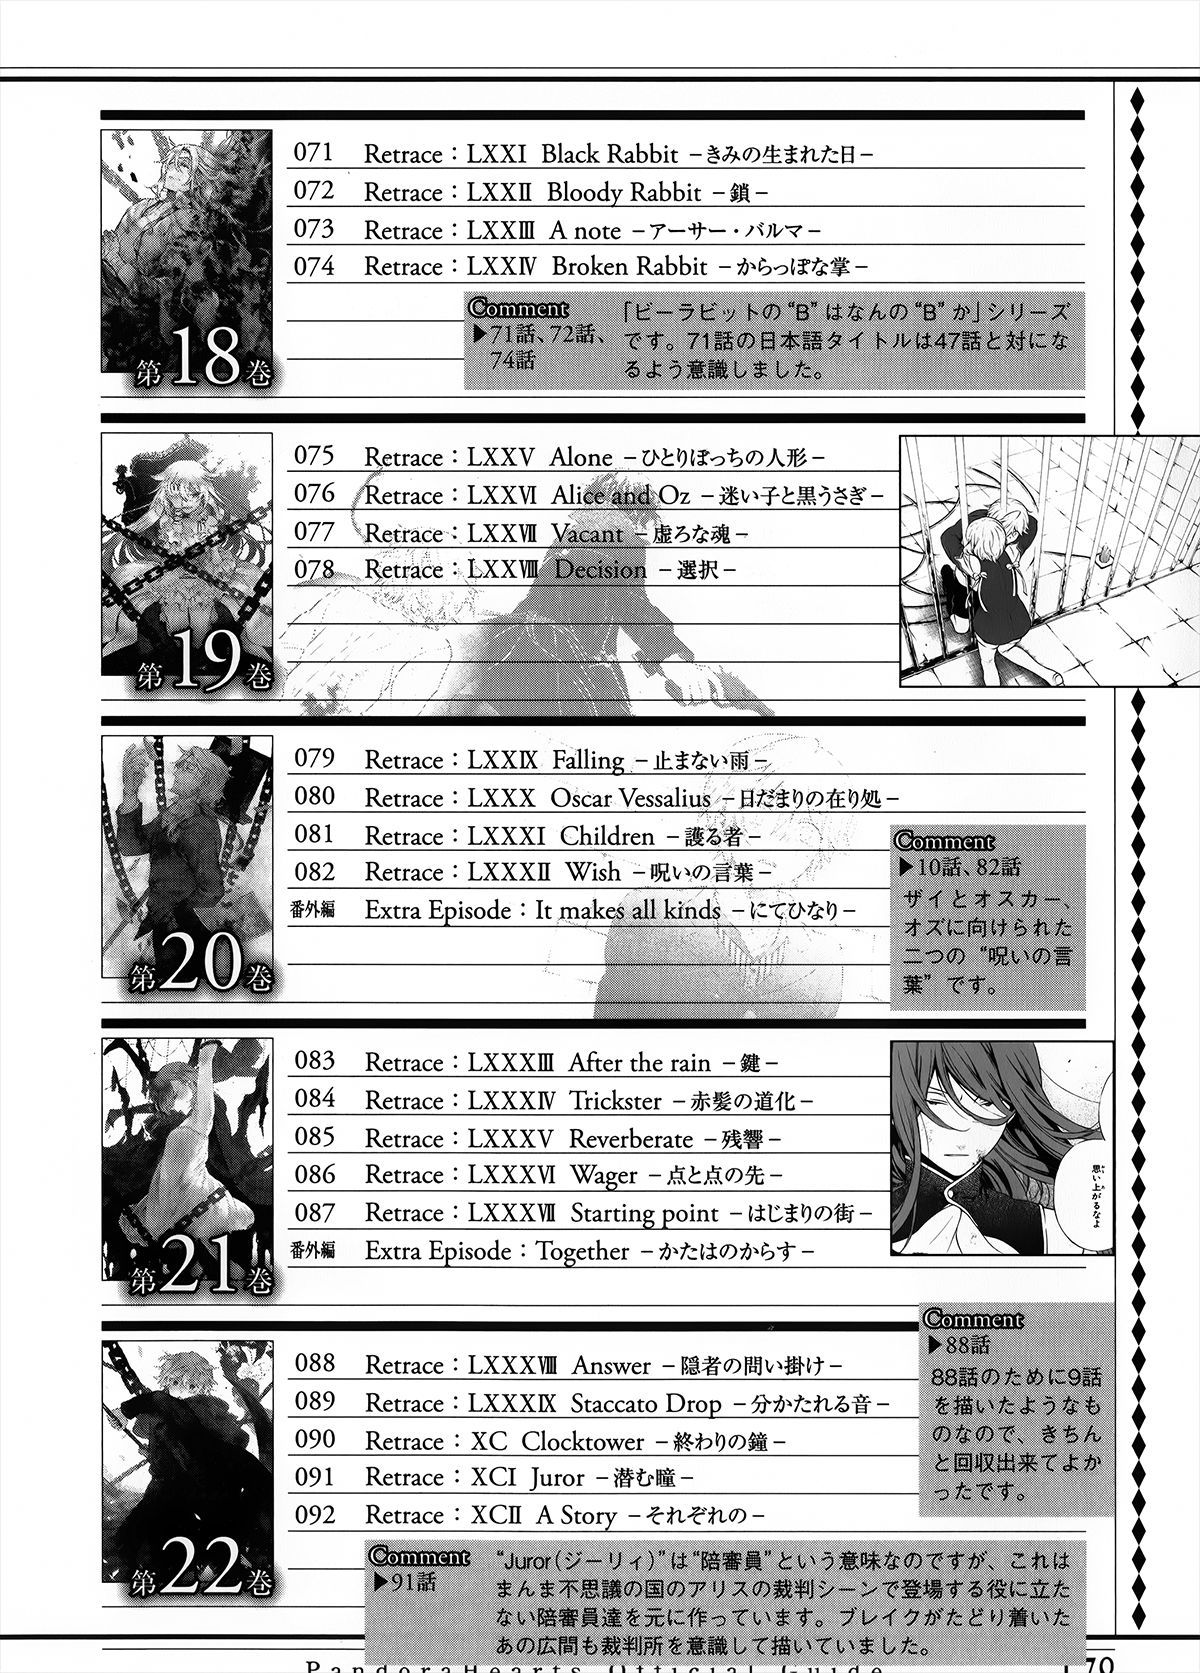 Pandora Hearts Guidebook 24+1: Last Dance パンドラハーツ オフィシャルガイド 24 + 1 ~Last Dance! 180